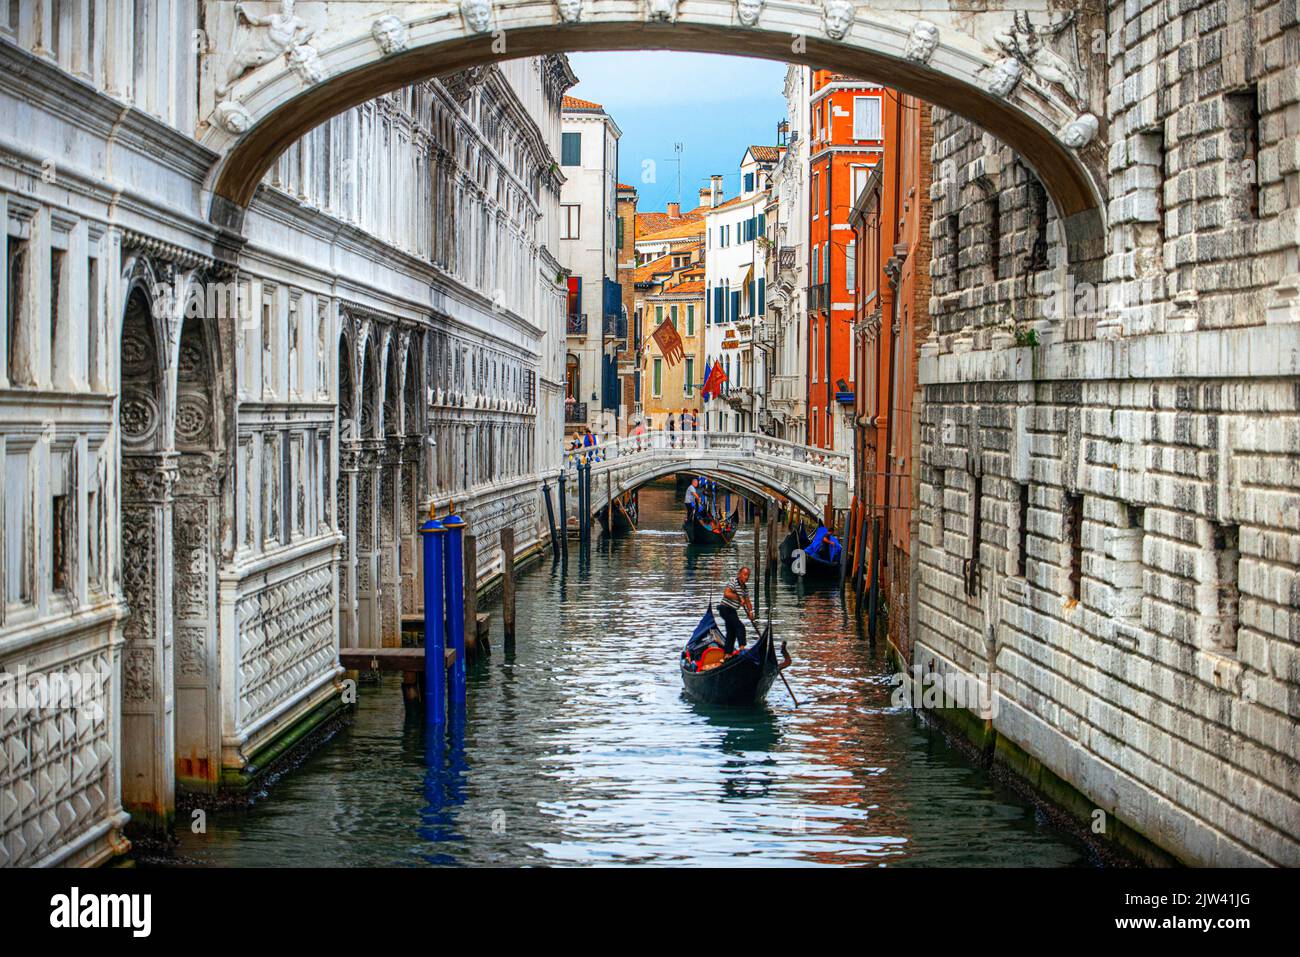 The Bridge of Sighs Ponte dei Sospiri over the Rio di Palazzo della Paglia, Venice, Italy. Ponte della Paglia, historical bridge.  Venice is slowly si Stock Photo